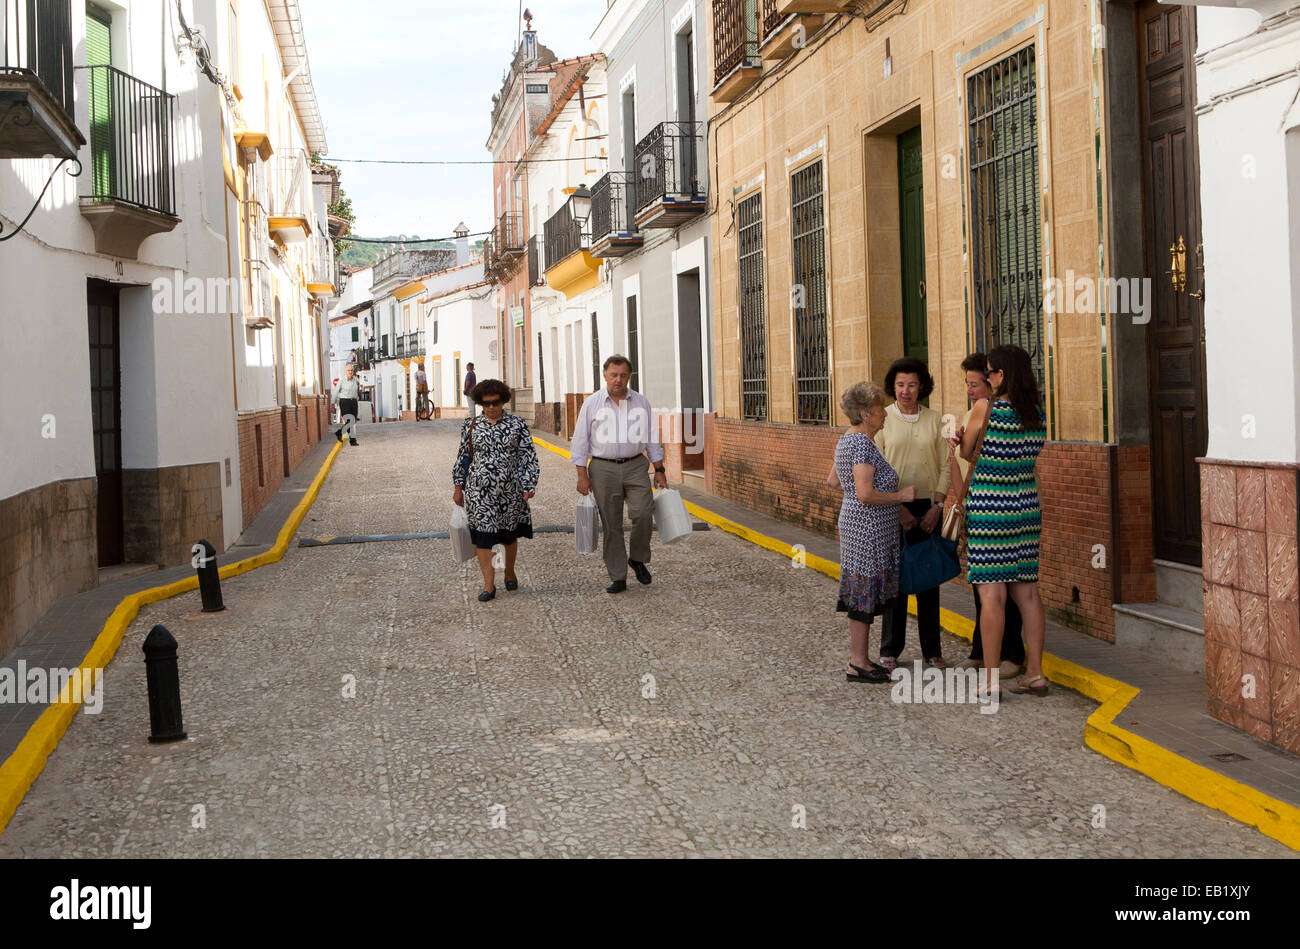 Group of women talking in the street, village of Alajar, Sierra de Aracena, Huelva province, Spain Stock Photo